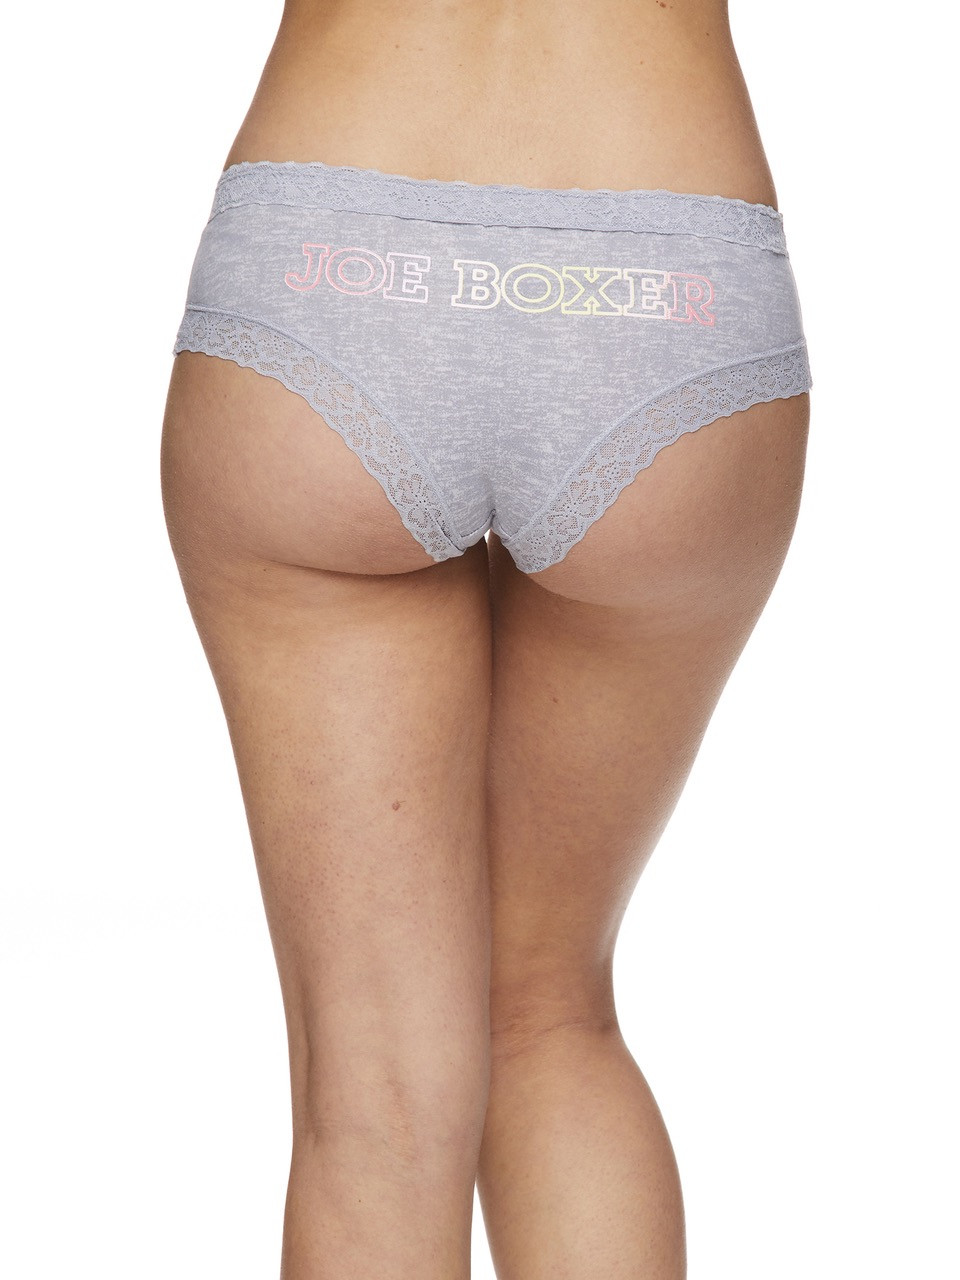 Joe Boxer 5-Piece Tag Free Lace Thong Panty Set